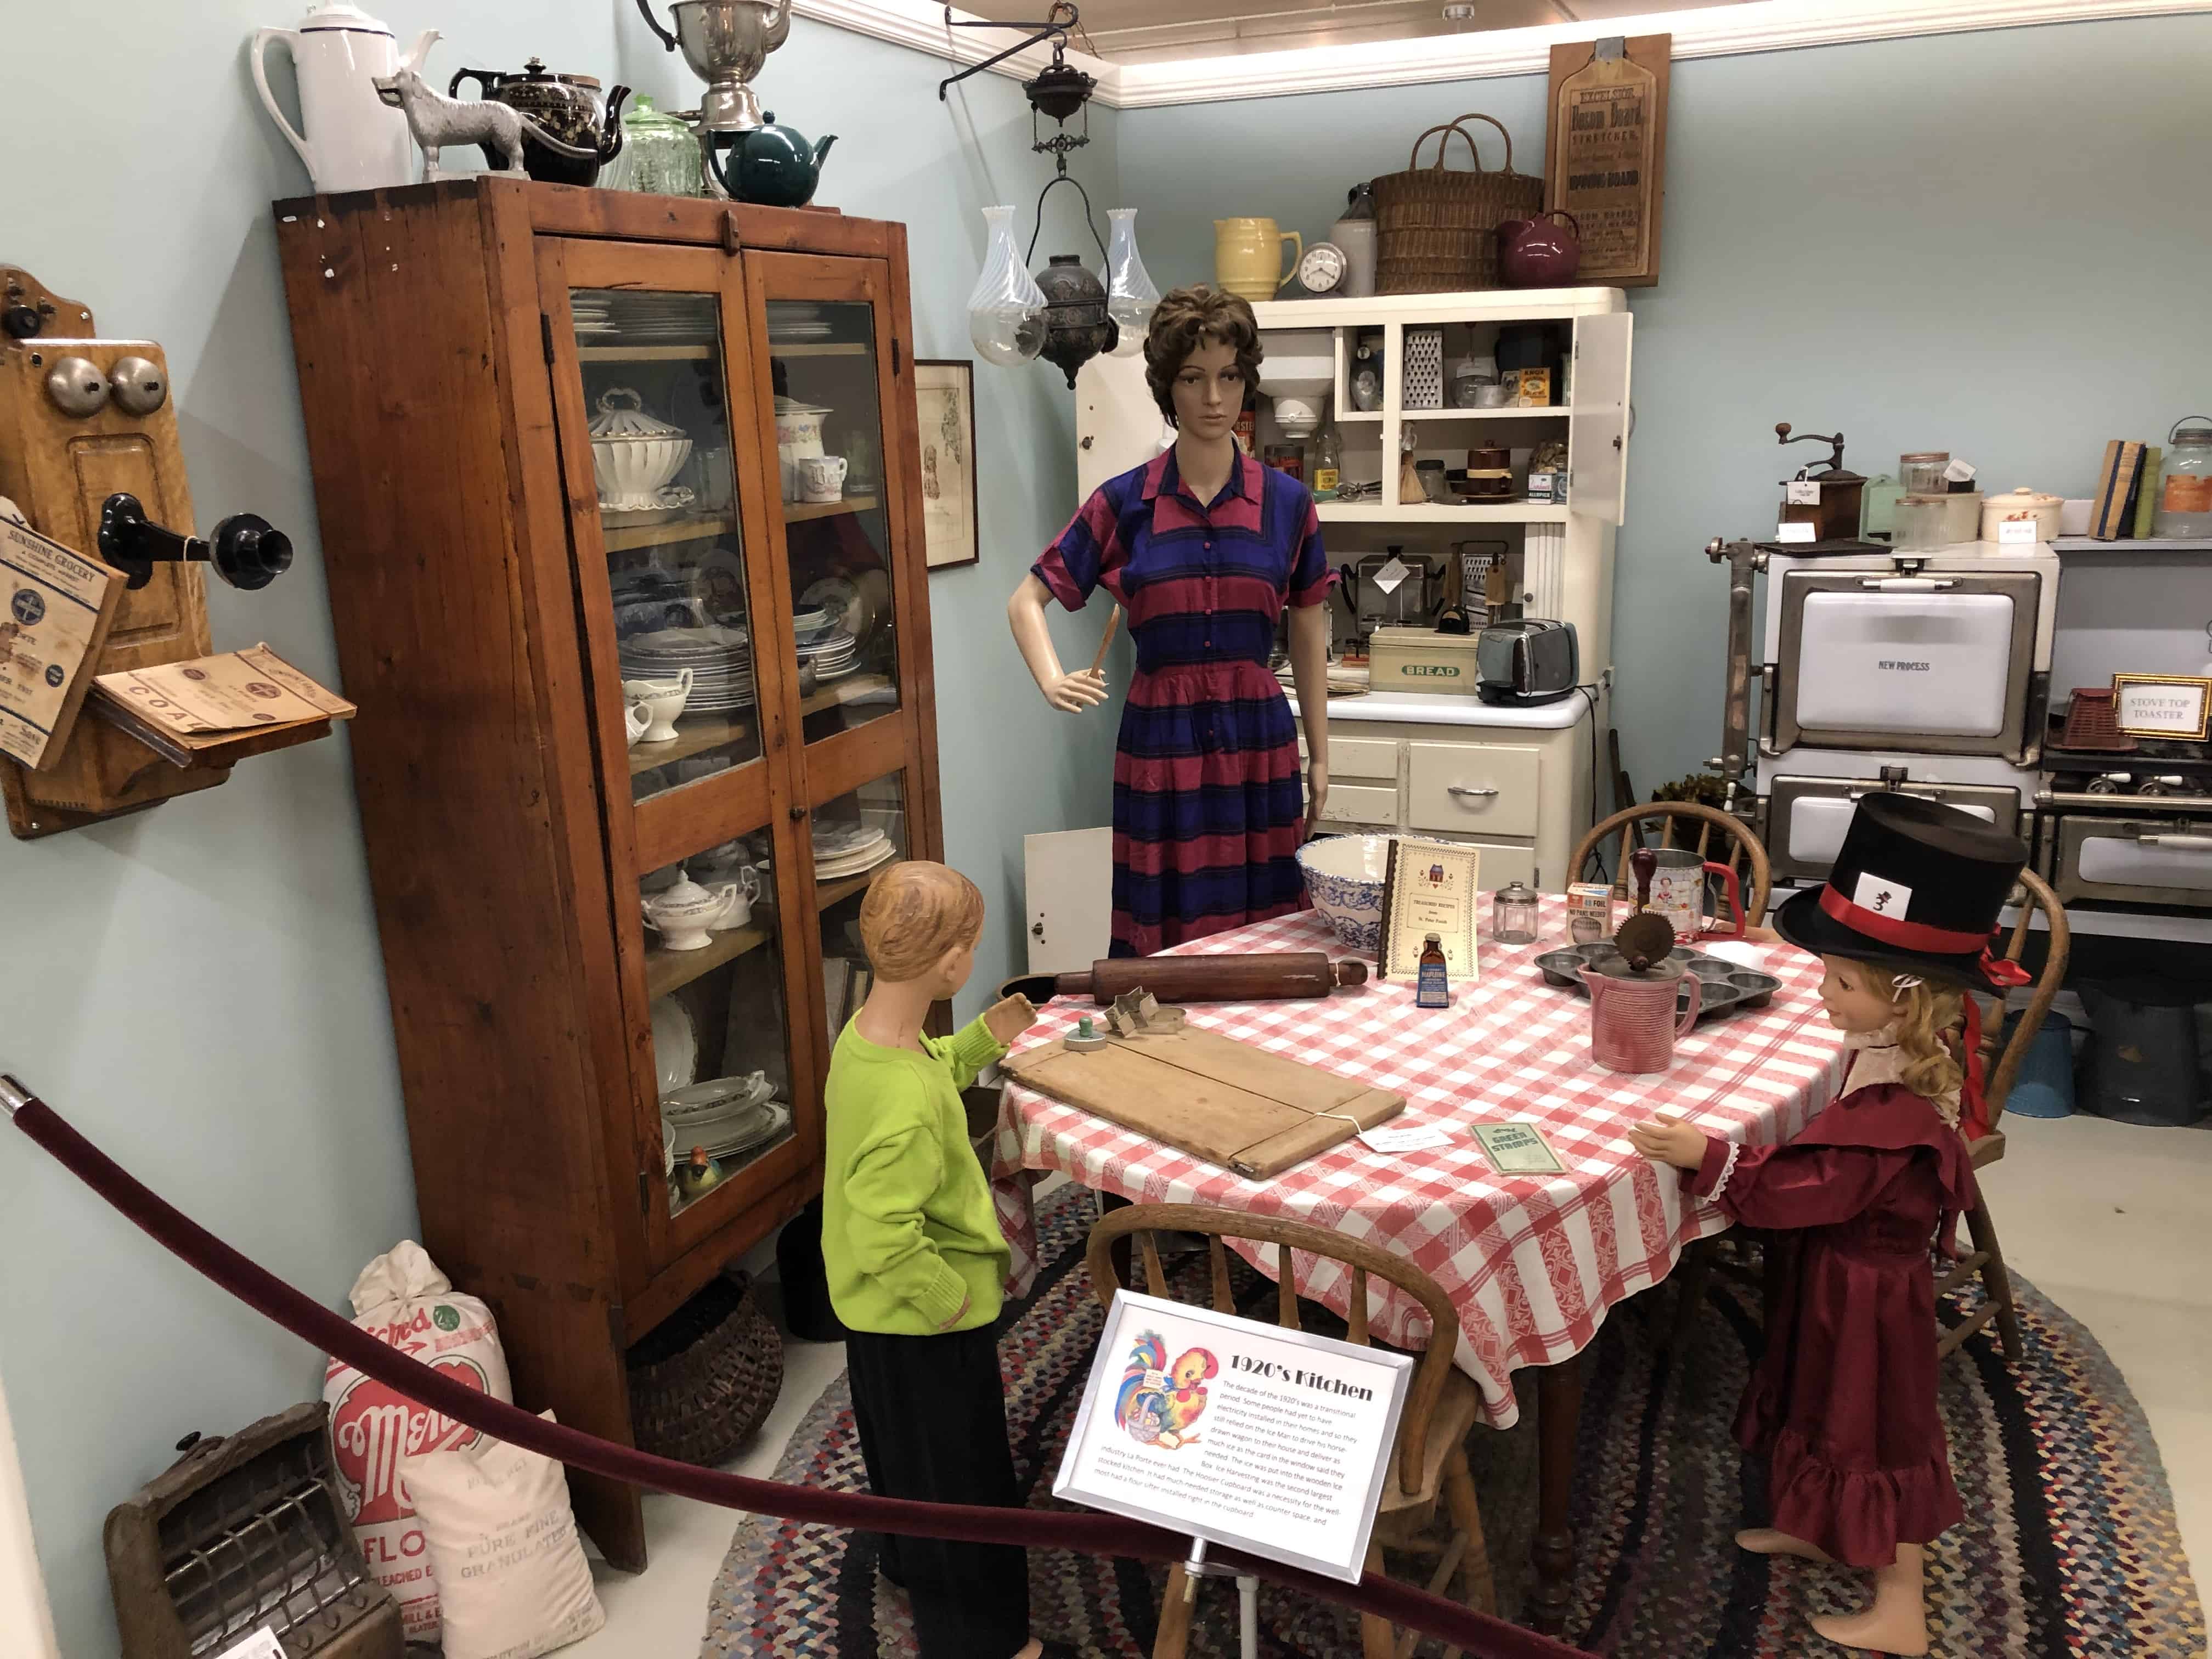 1920s kitchen at the La Porte County Historical Society Museum in La Porte, Indiana